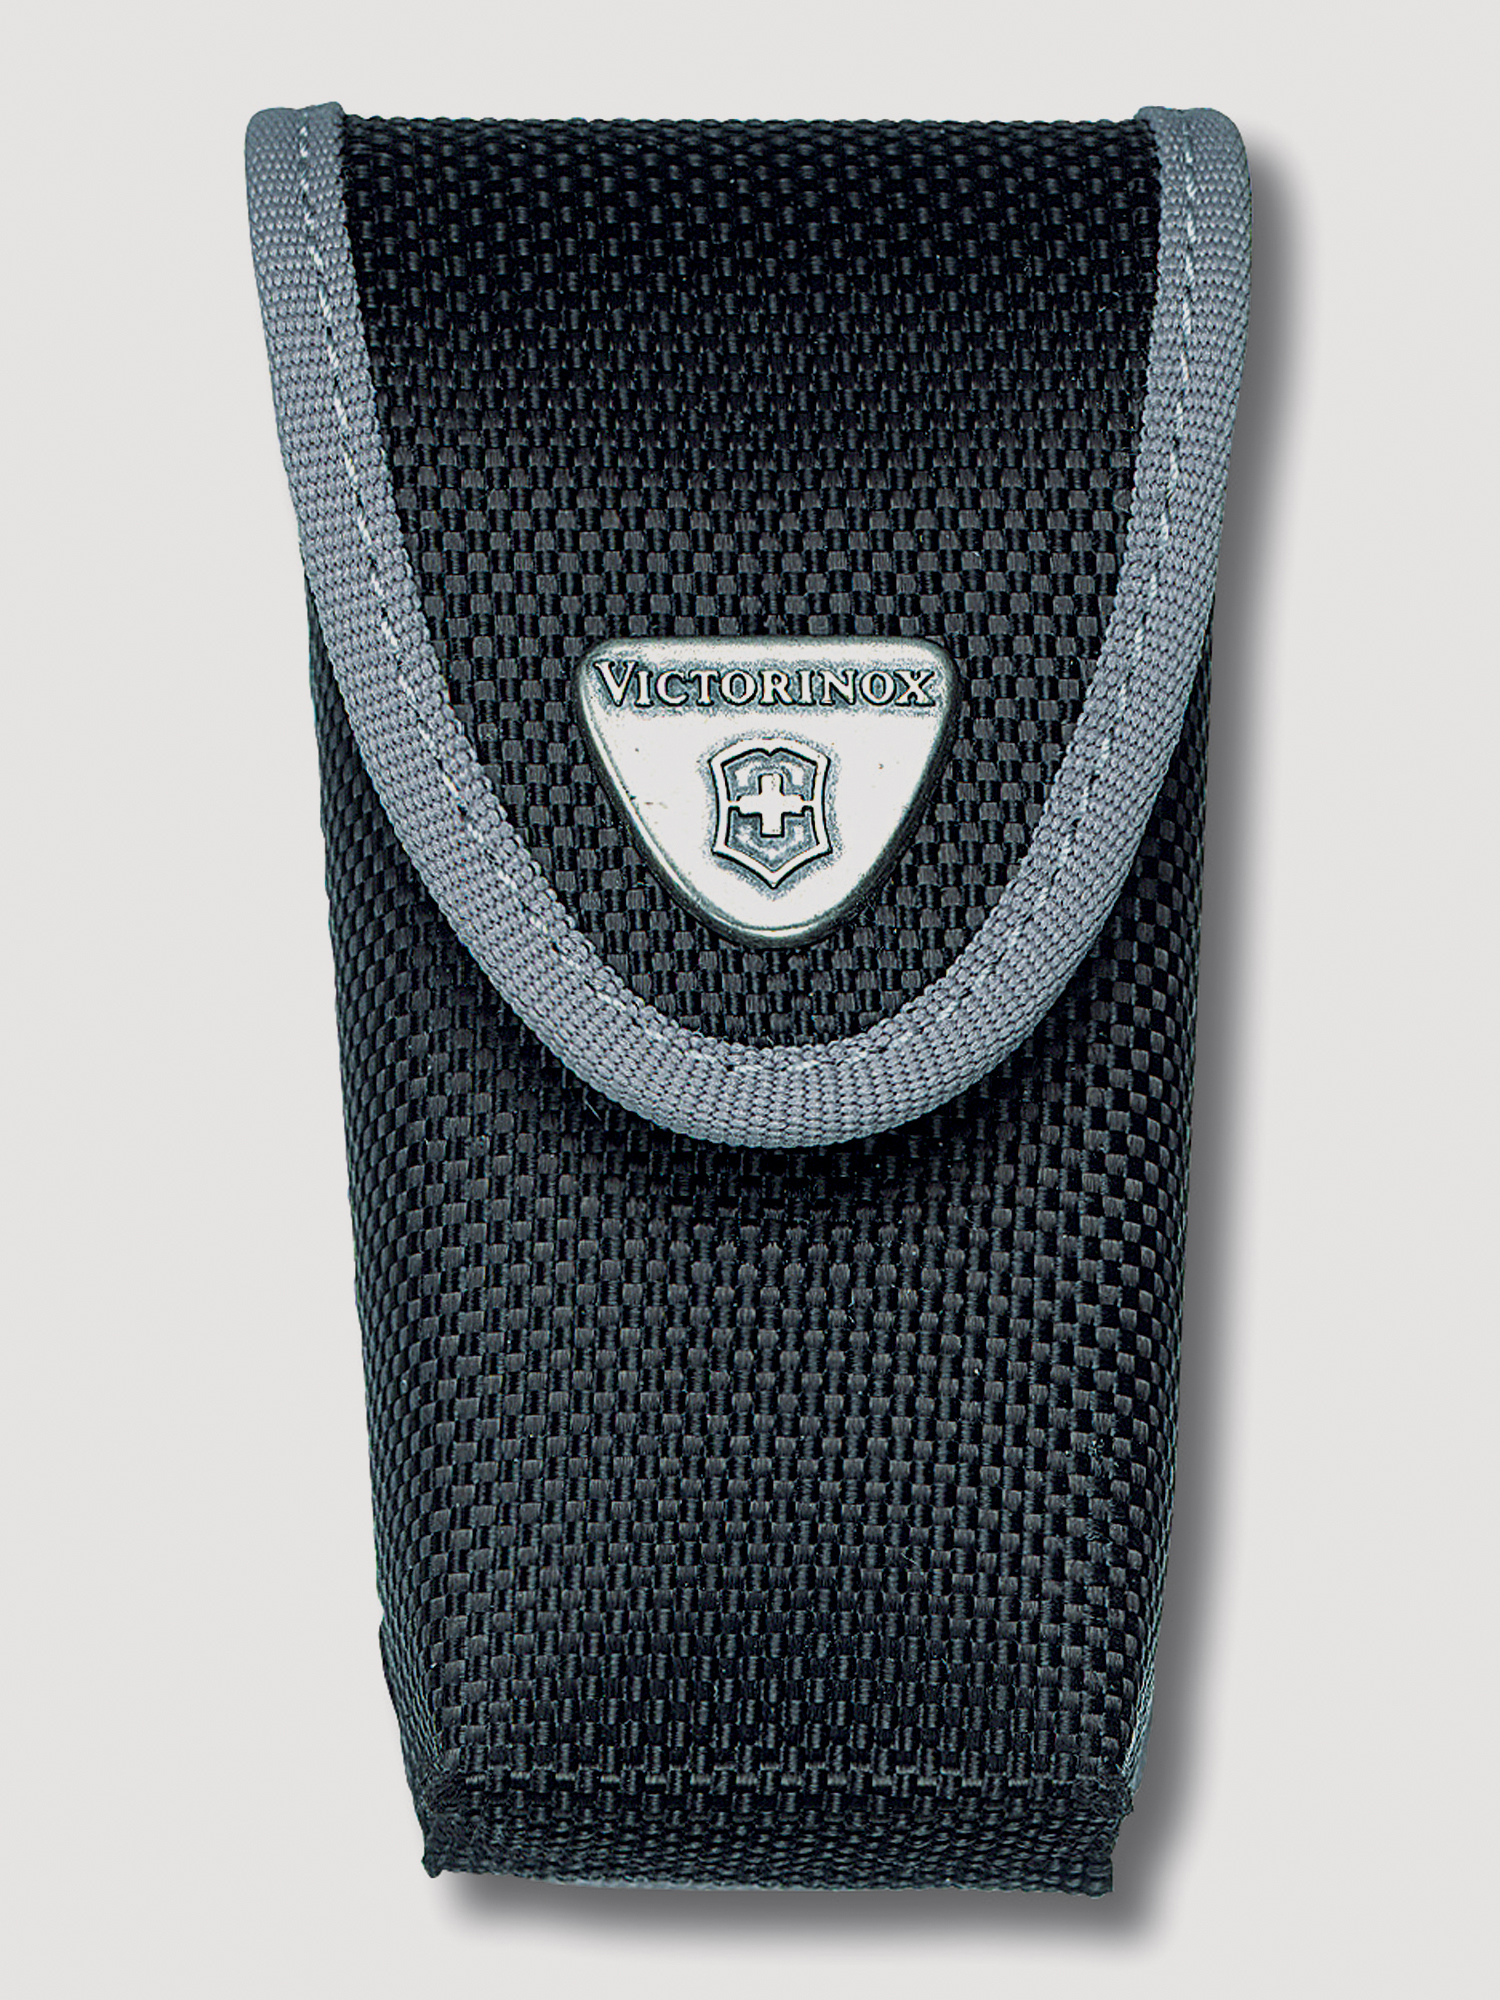 Чехол на ремень VICTORINOX для ножей 91 и 93 мм толщиной 2-4 уровня, на липучке, нейлоновый, чёрный, Черный ремень для подвешивания отягощений к поясу нейлоновый с логотипом profi fit profi fit rt 007